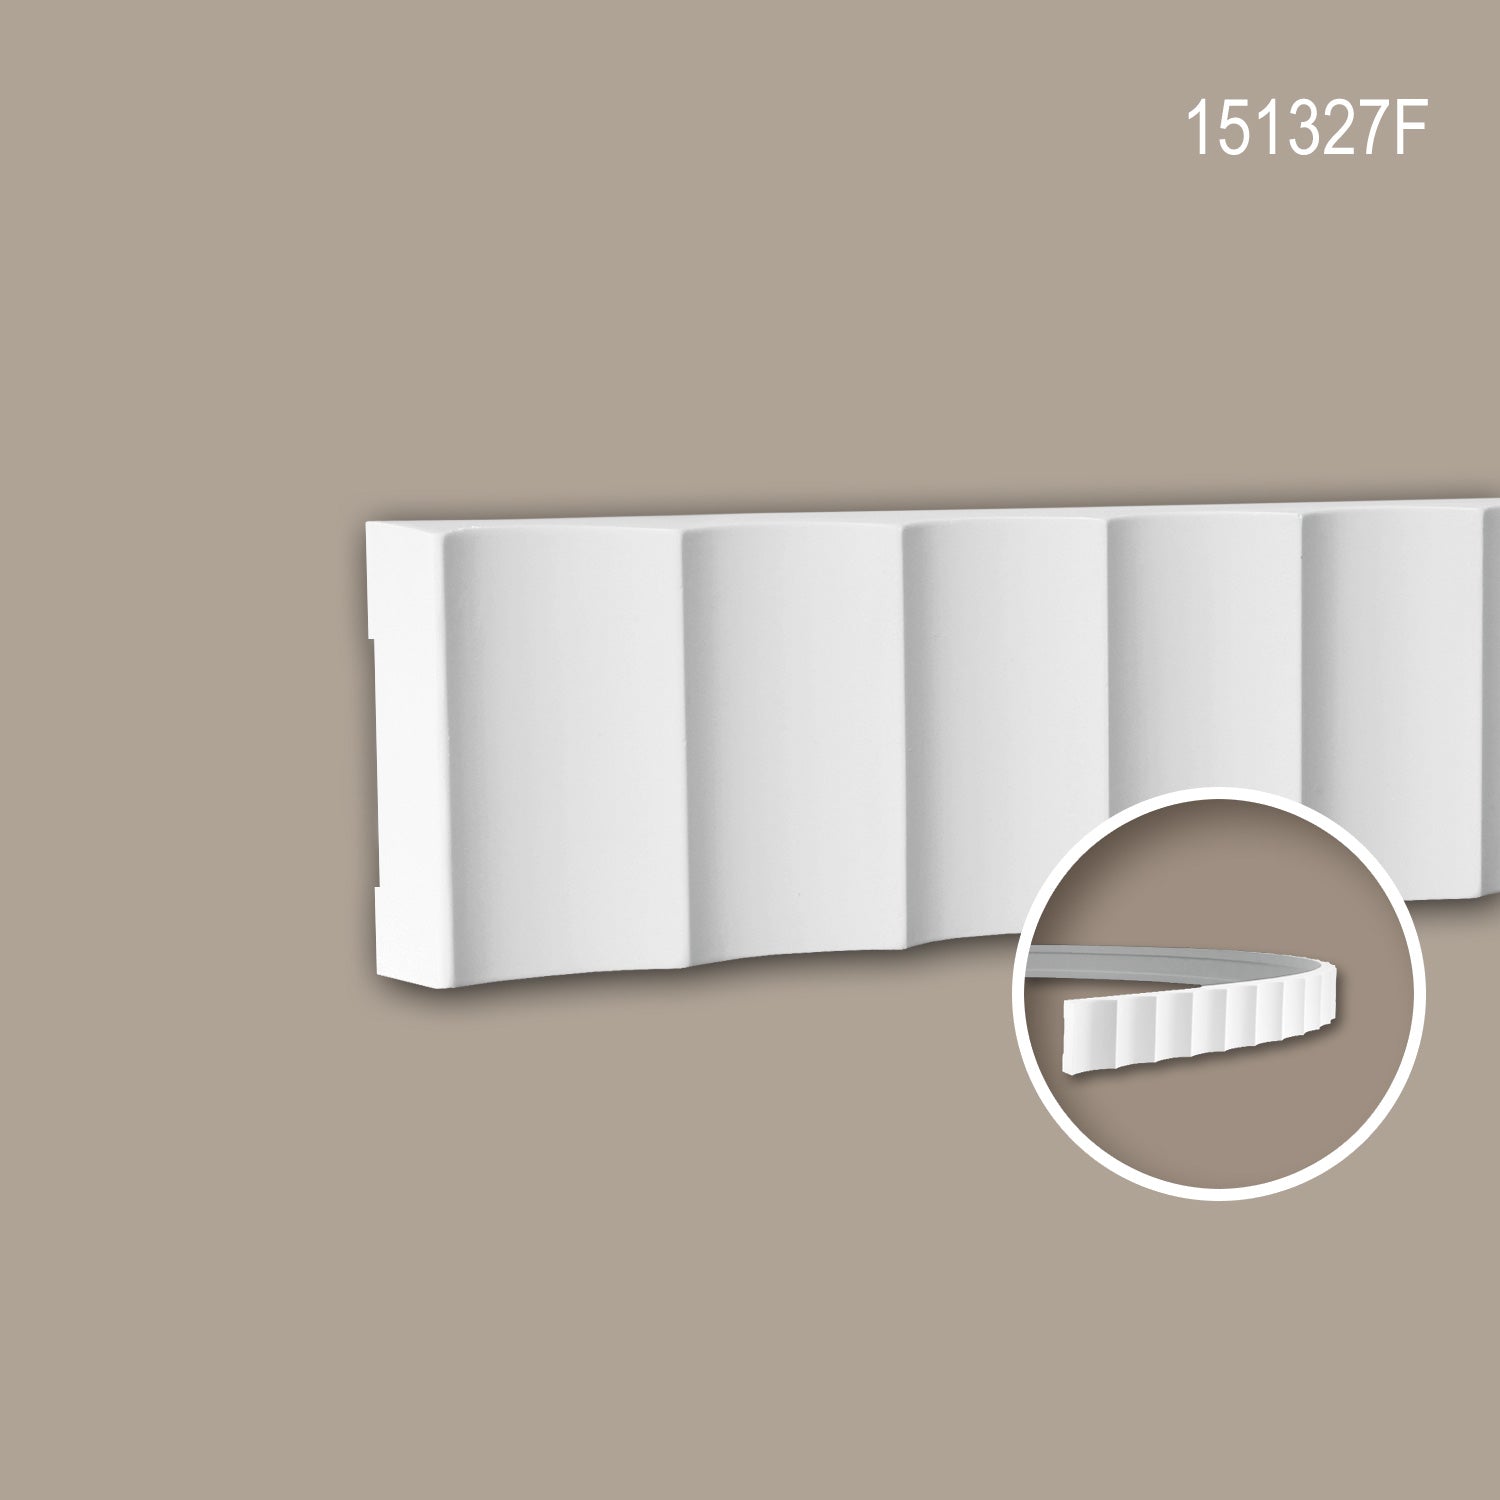 Cimaise 151327F Profhome Moulure décorative flexible design moderne blanc 2 m